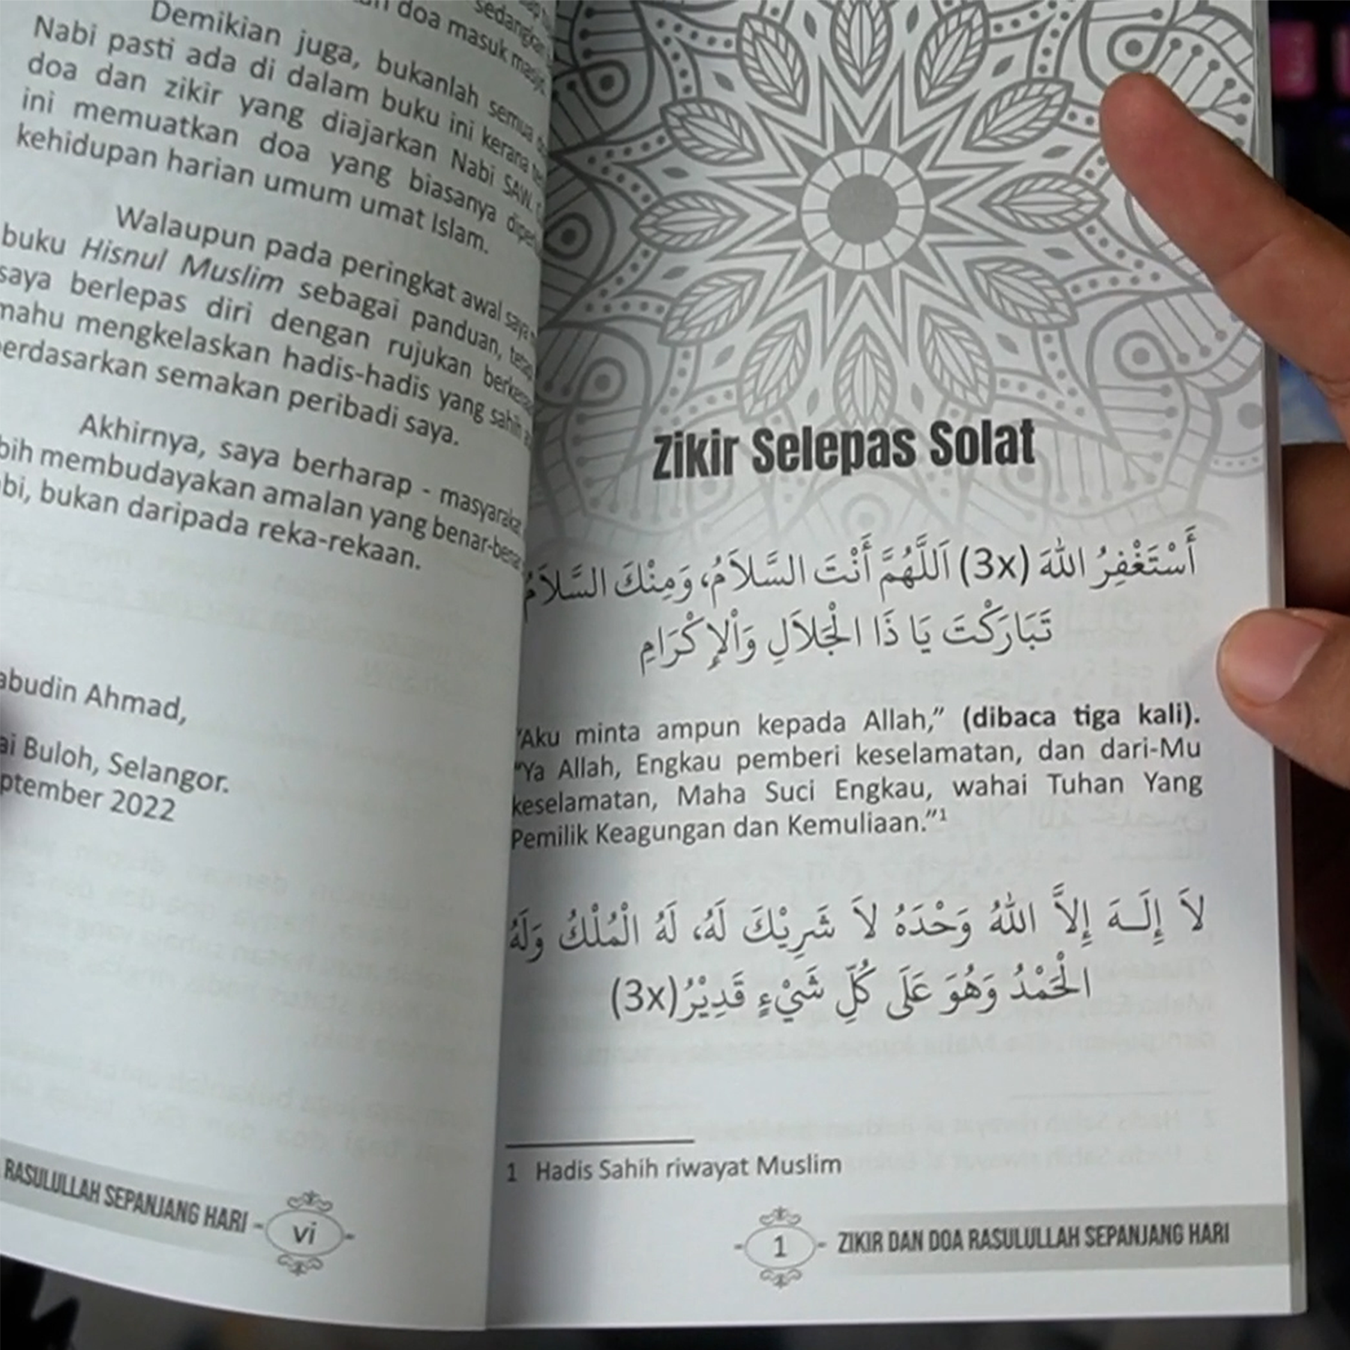 Zikir dan Doa Rasulullah Sepanjang Hari dari hadis Sahih dan Hasan sahaja | 100% Original dari Nabi Muhammad